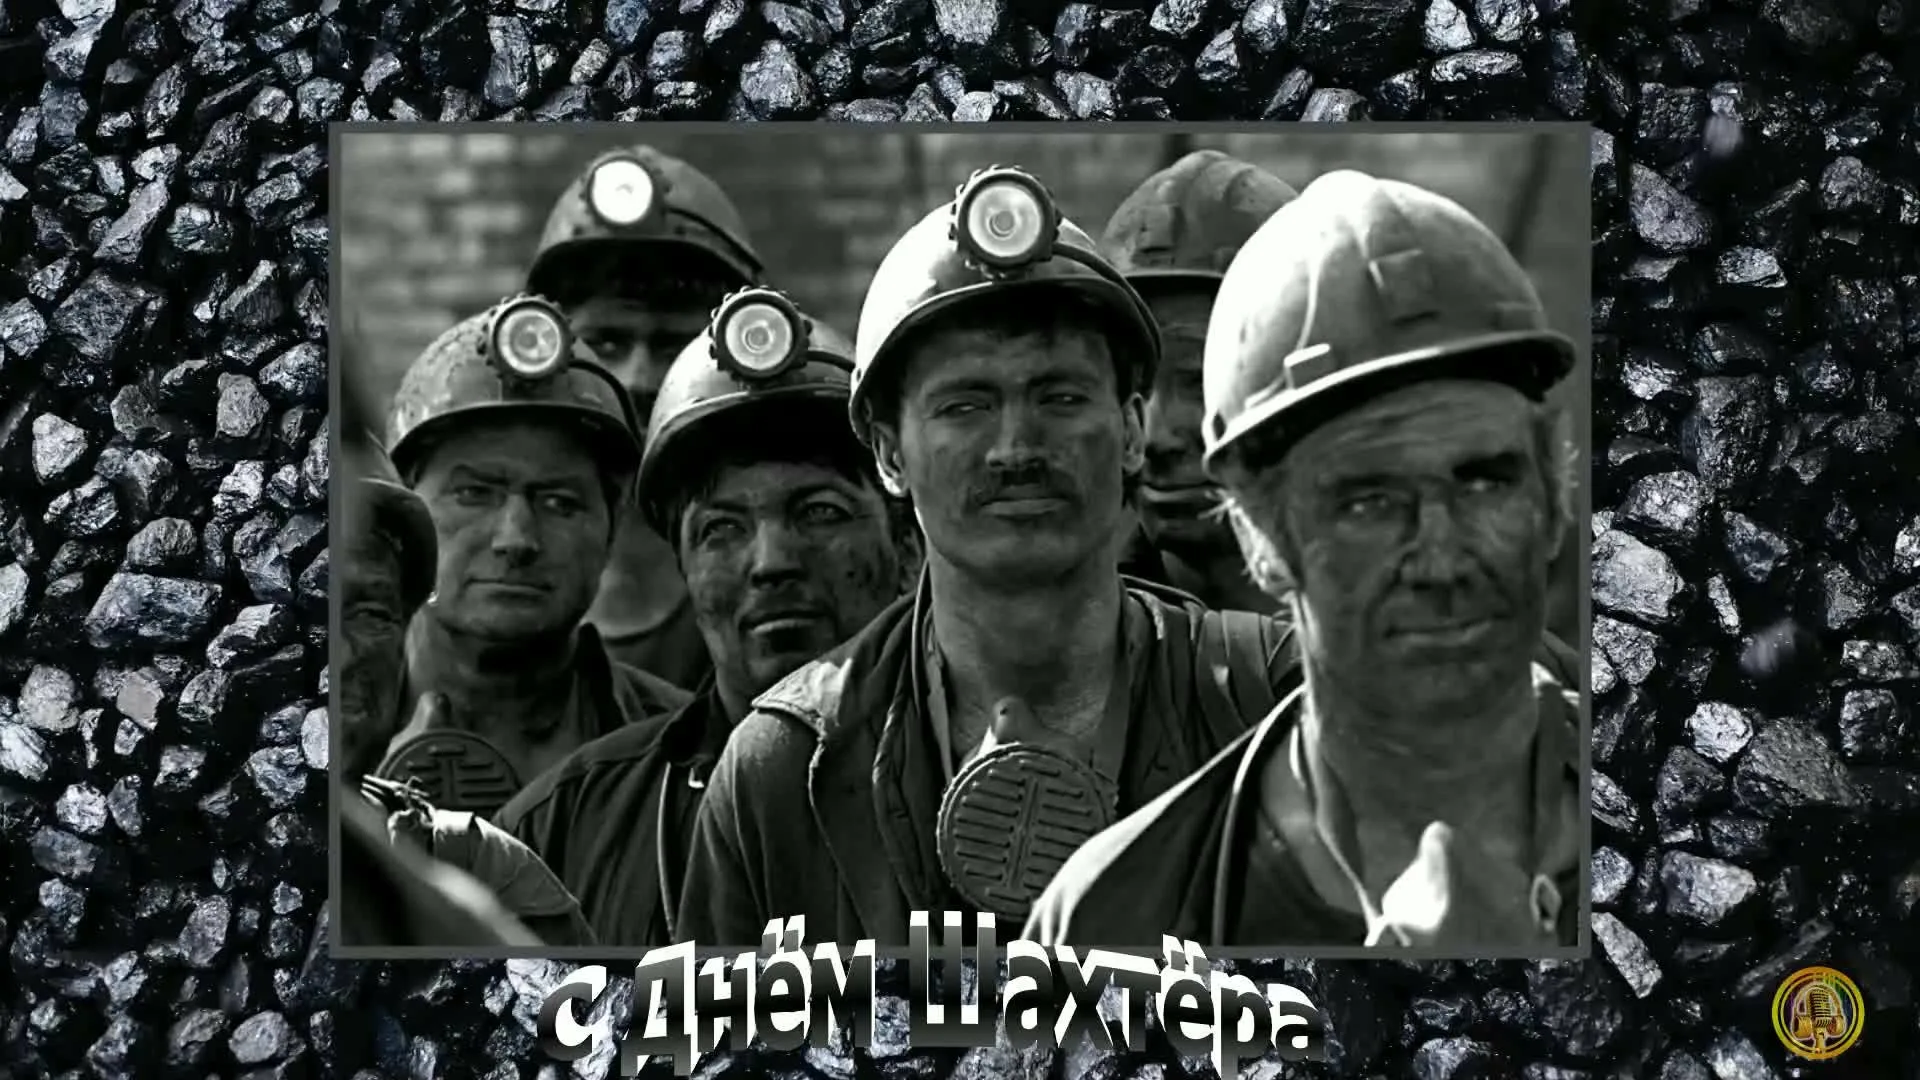 Фото Поздравления с Днем шахтера руководителю (начальнику) #79